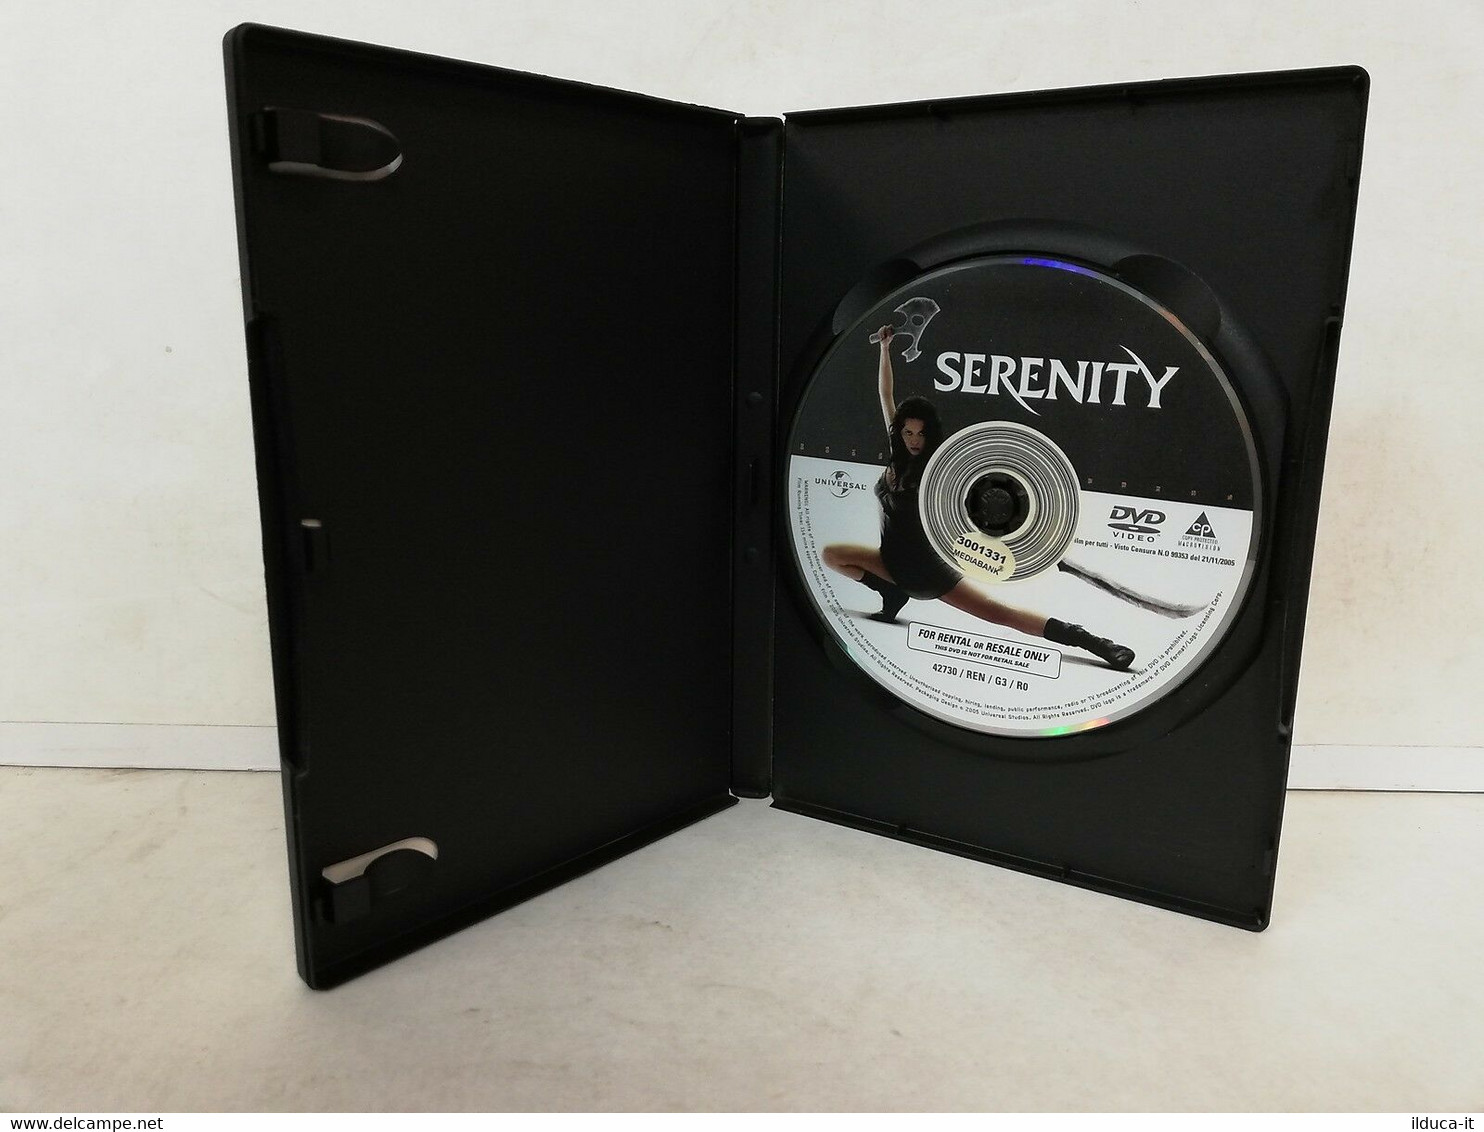 00999 DVD - SERENITY - Nathan Fillion, Gina Torres, Alan Tudyk - USA 2005 - Sciences-Fictions Et Fantaisie